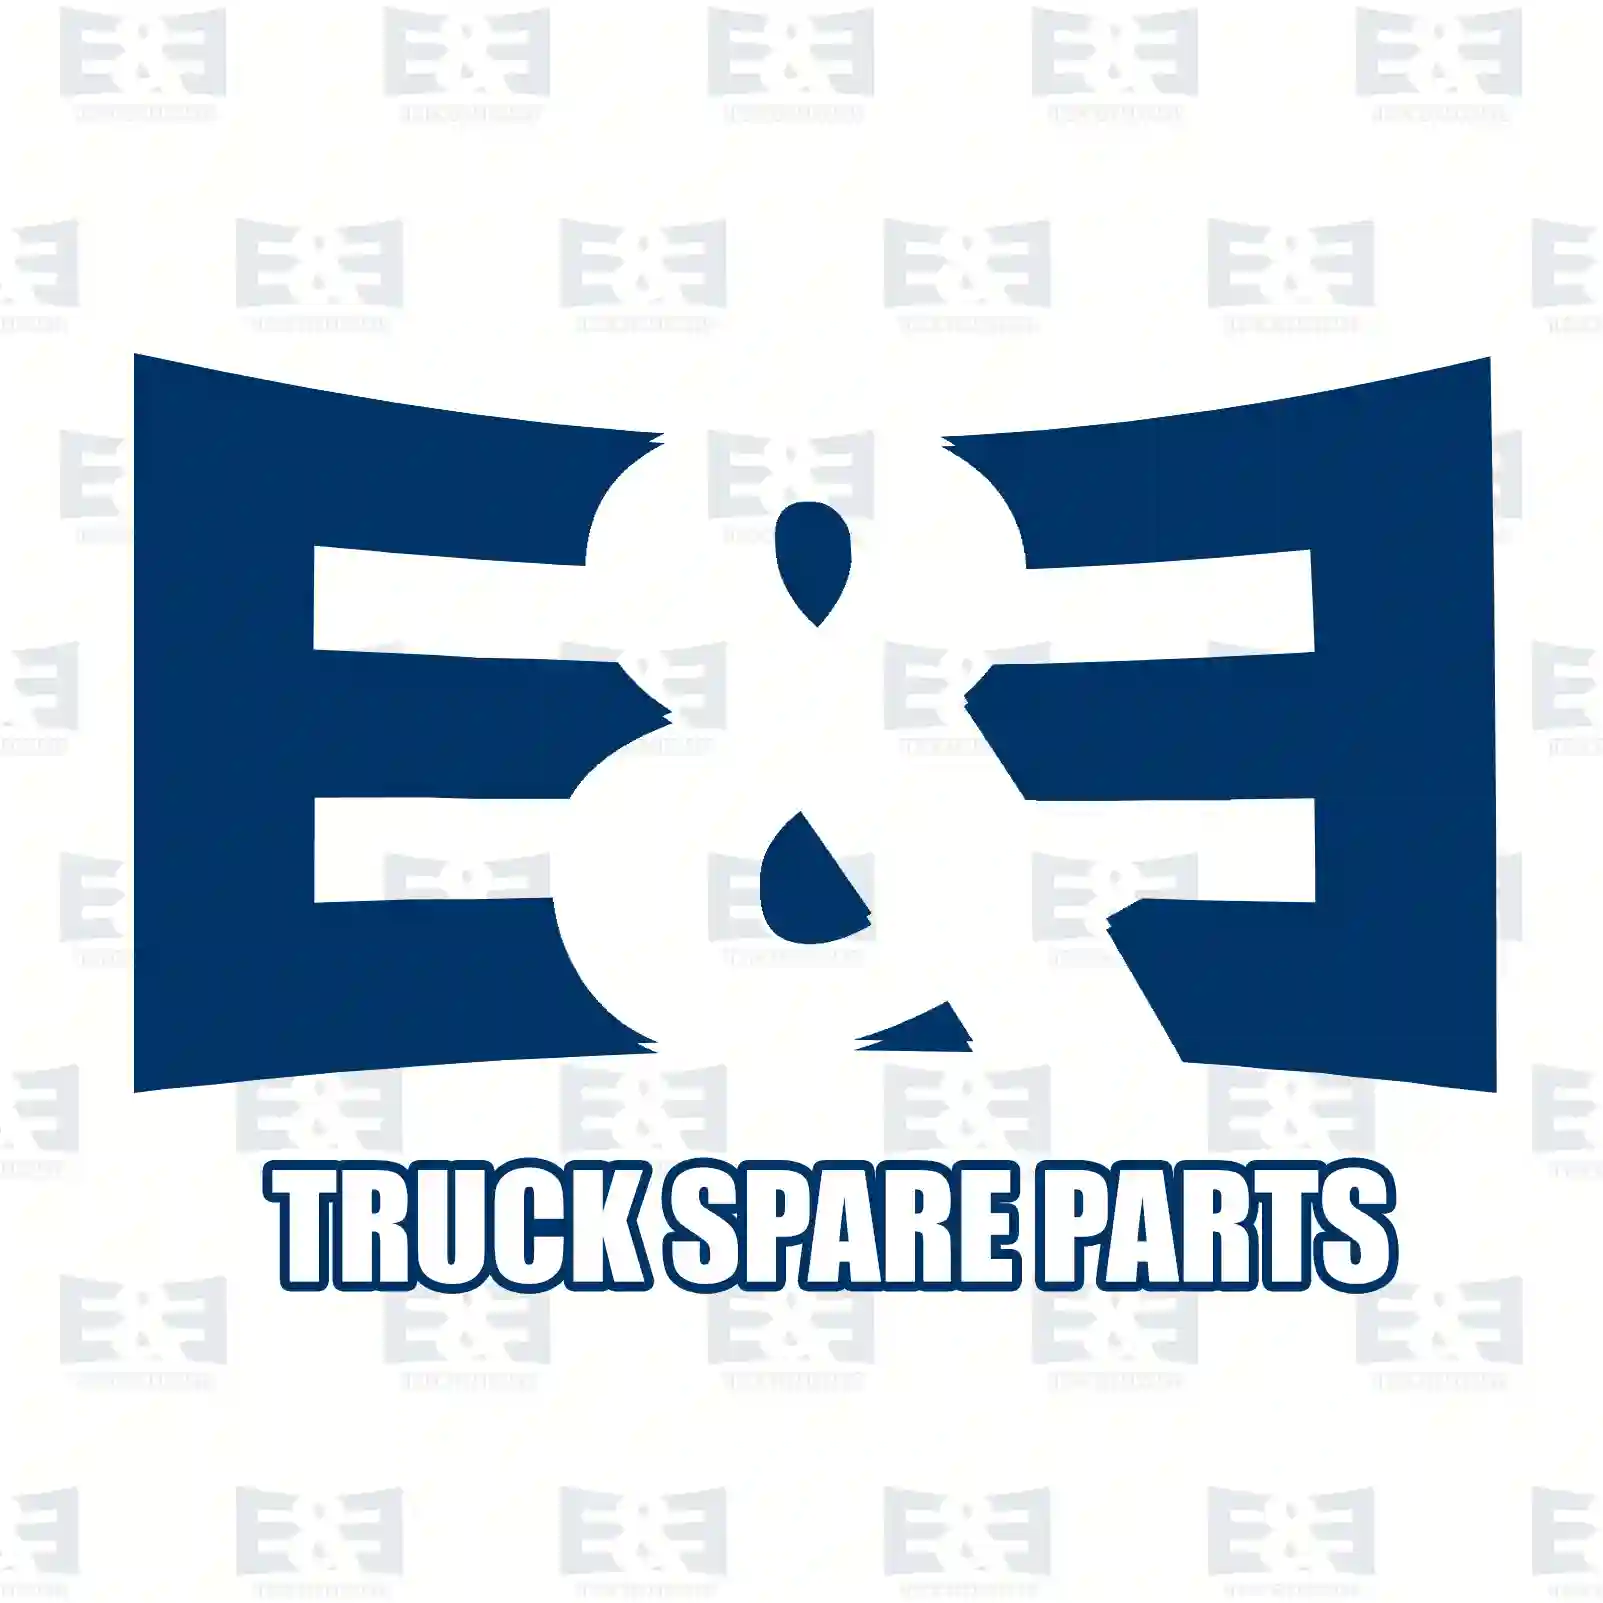 Bumper, complete, plastic, 2E2292976, 81416104103, 8141 ||  2E2292976 E&E Truck Spare Parts | Truck Spare Parts, Auotomotive Spare Parts Bumper, complete, plastic, 2E2292976, 81416104103, 8141 ||  2E2292976 E&E Truck Spare Parts | Truck Spare Parts, Auotomotive Spare Parts